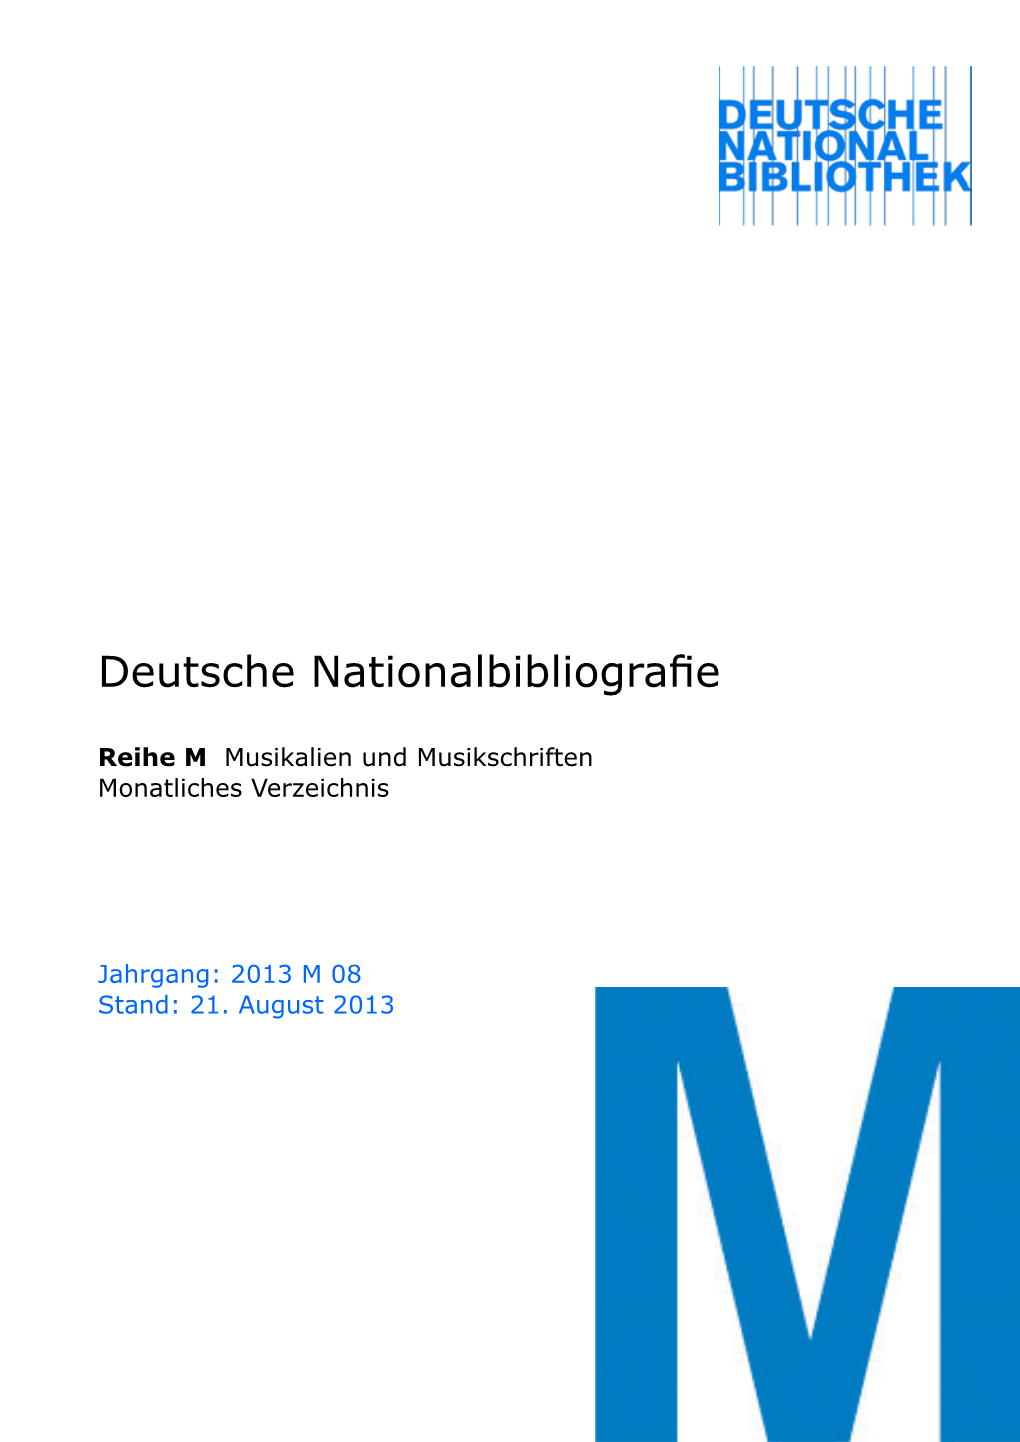 Deutsche Nationalbibliografie 2013 M 08